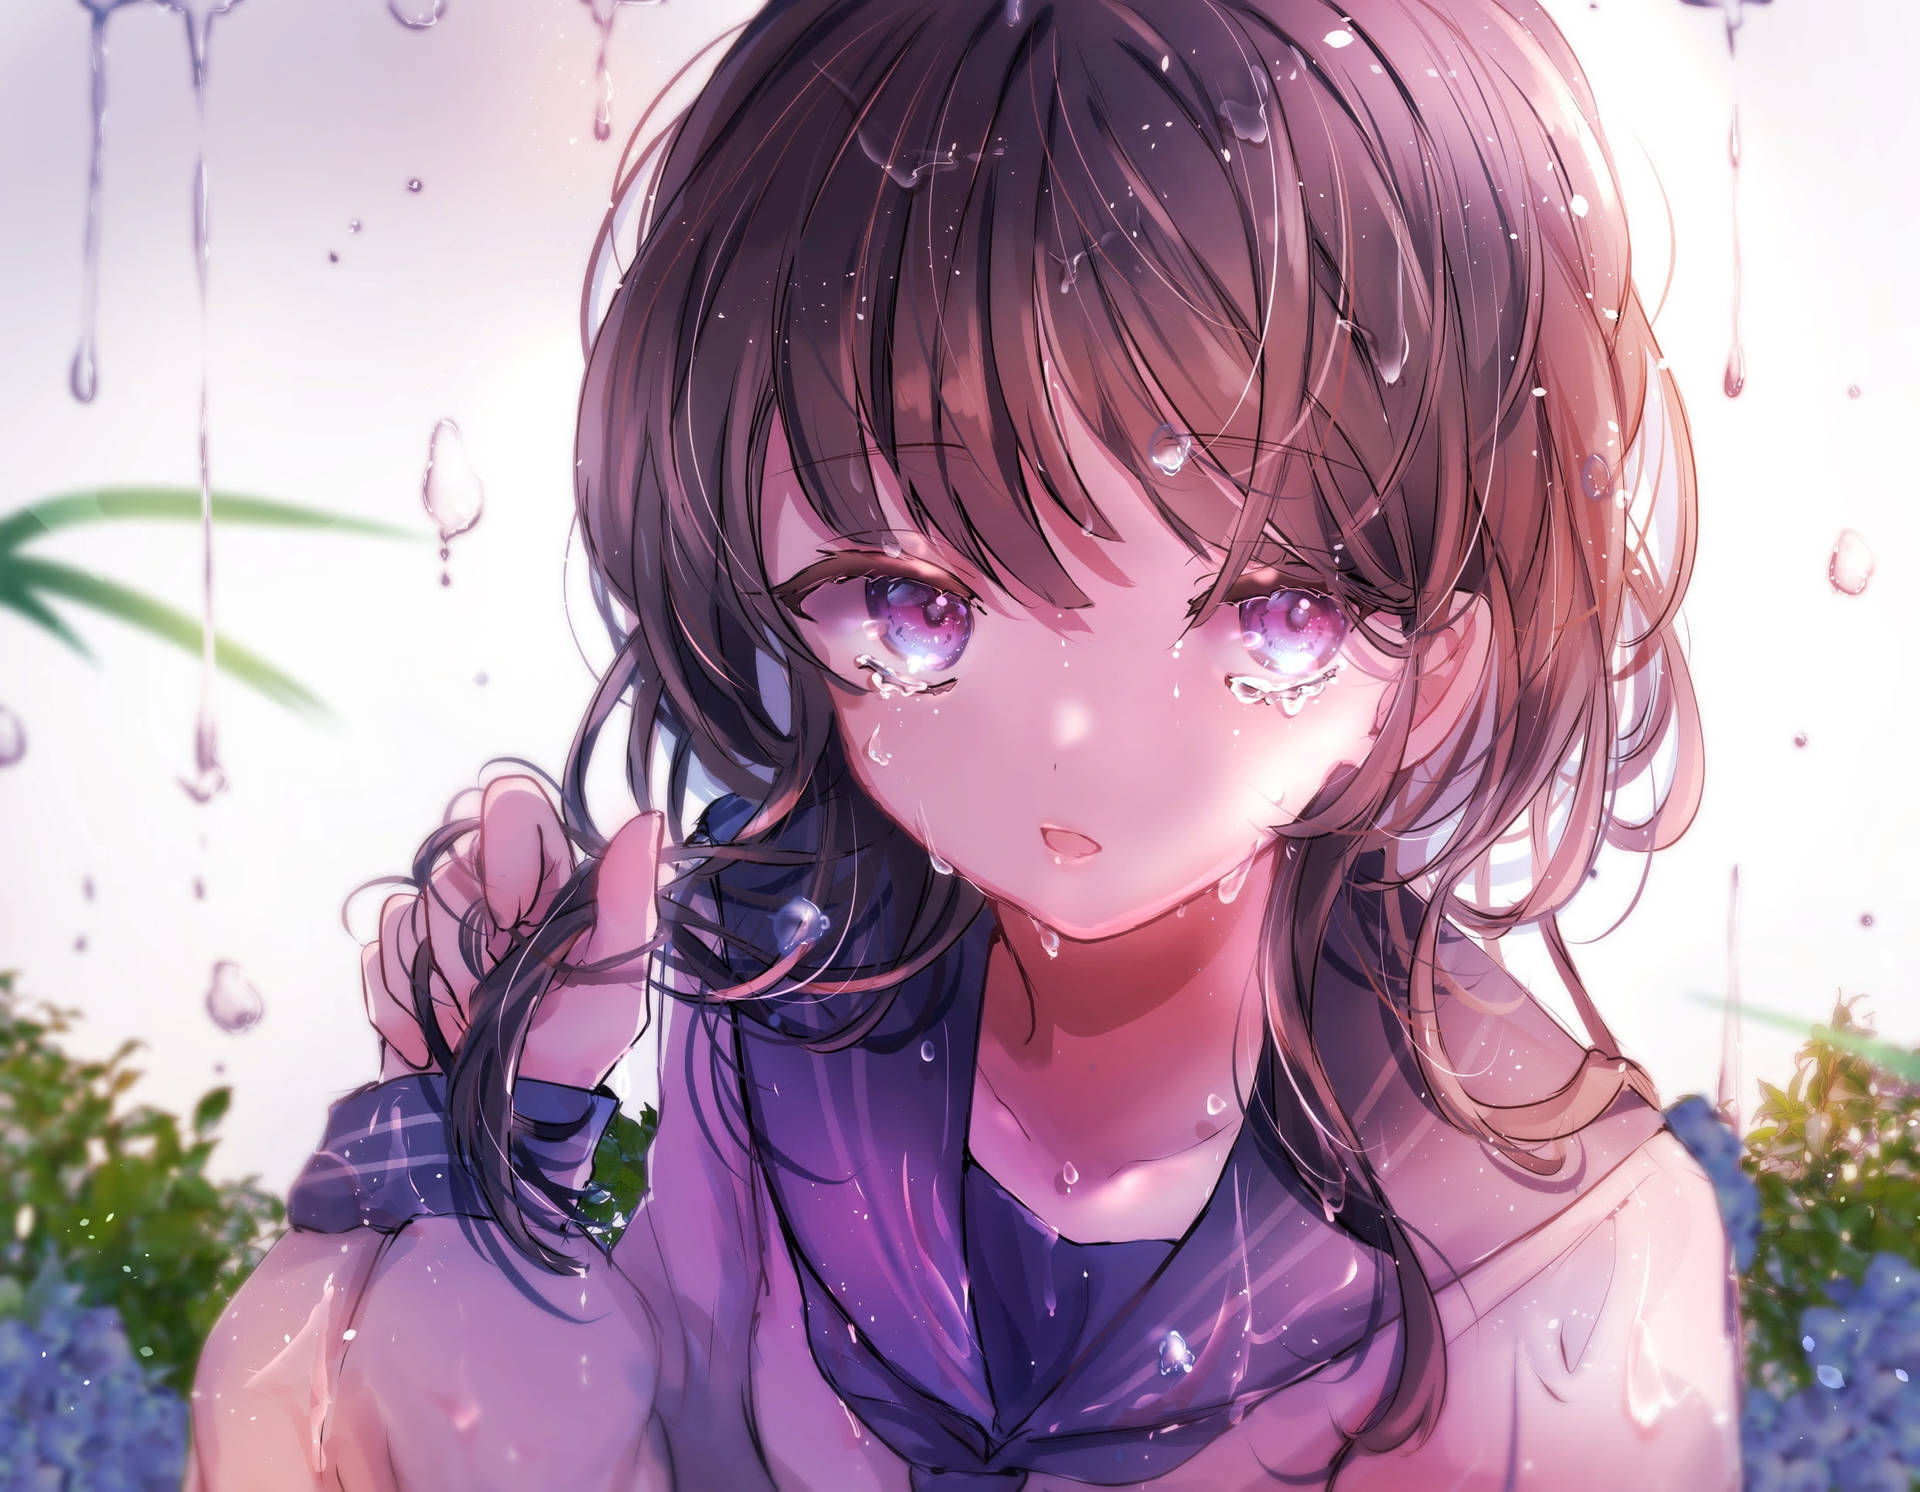 Sad Aesthetic Anime Girl Wet Hair Wallpaper